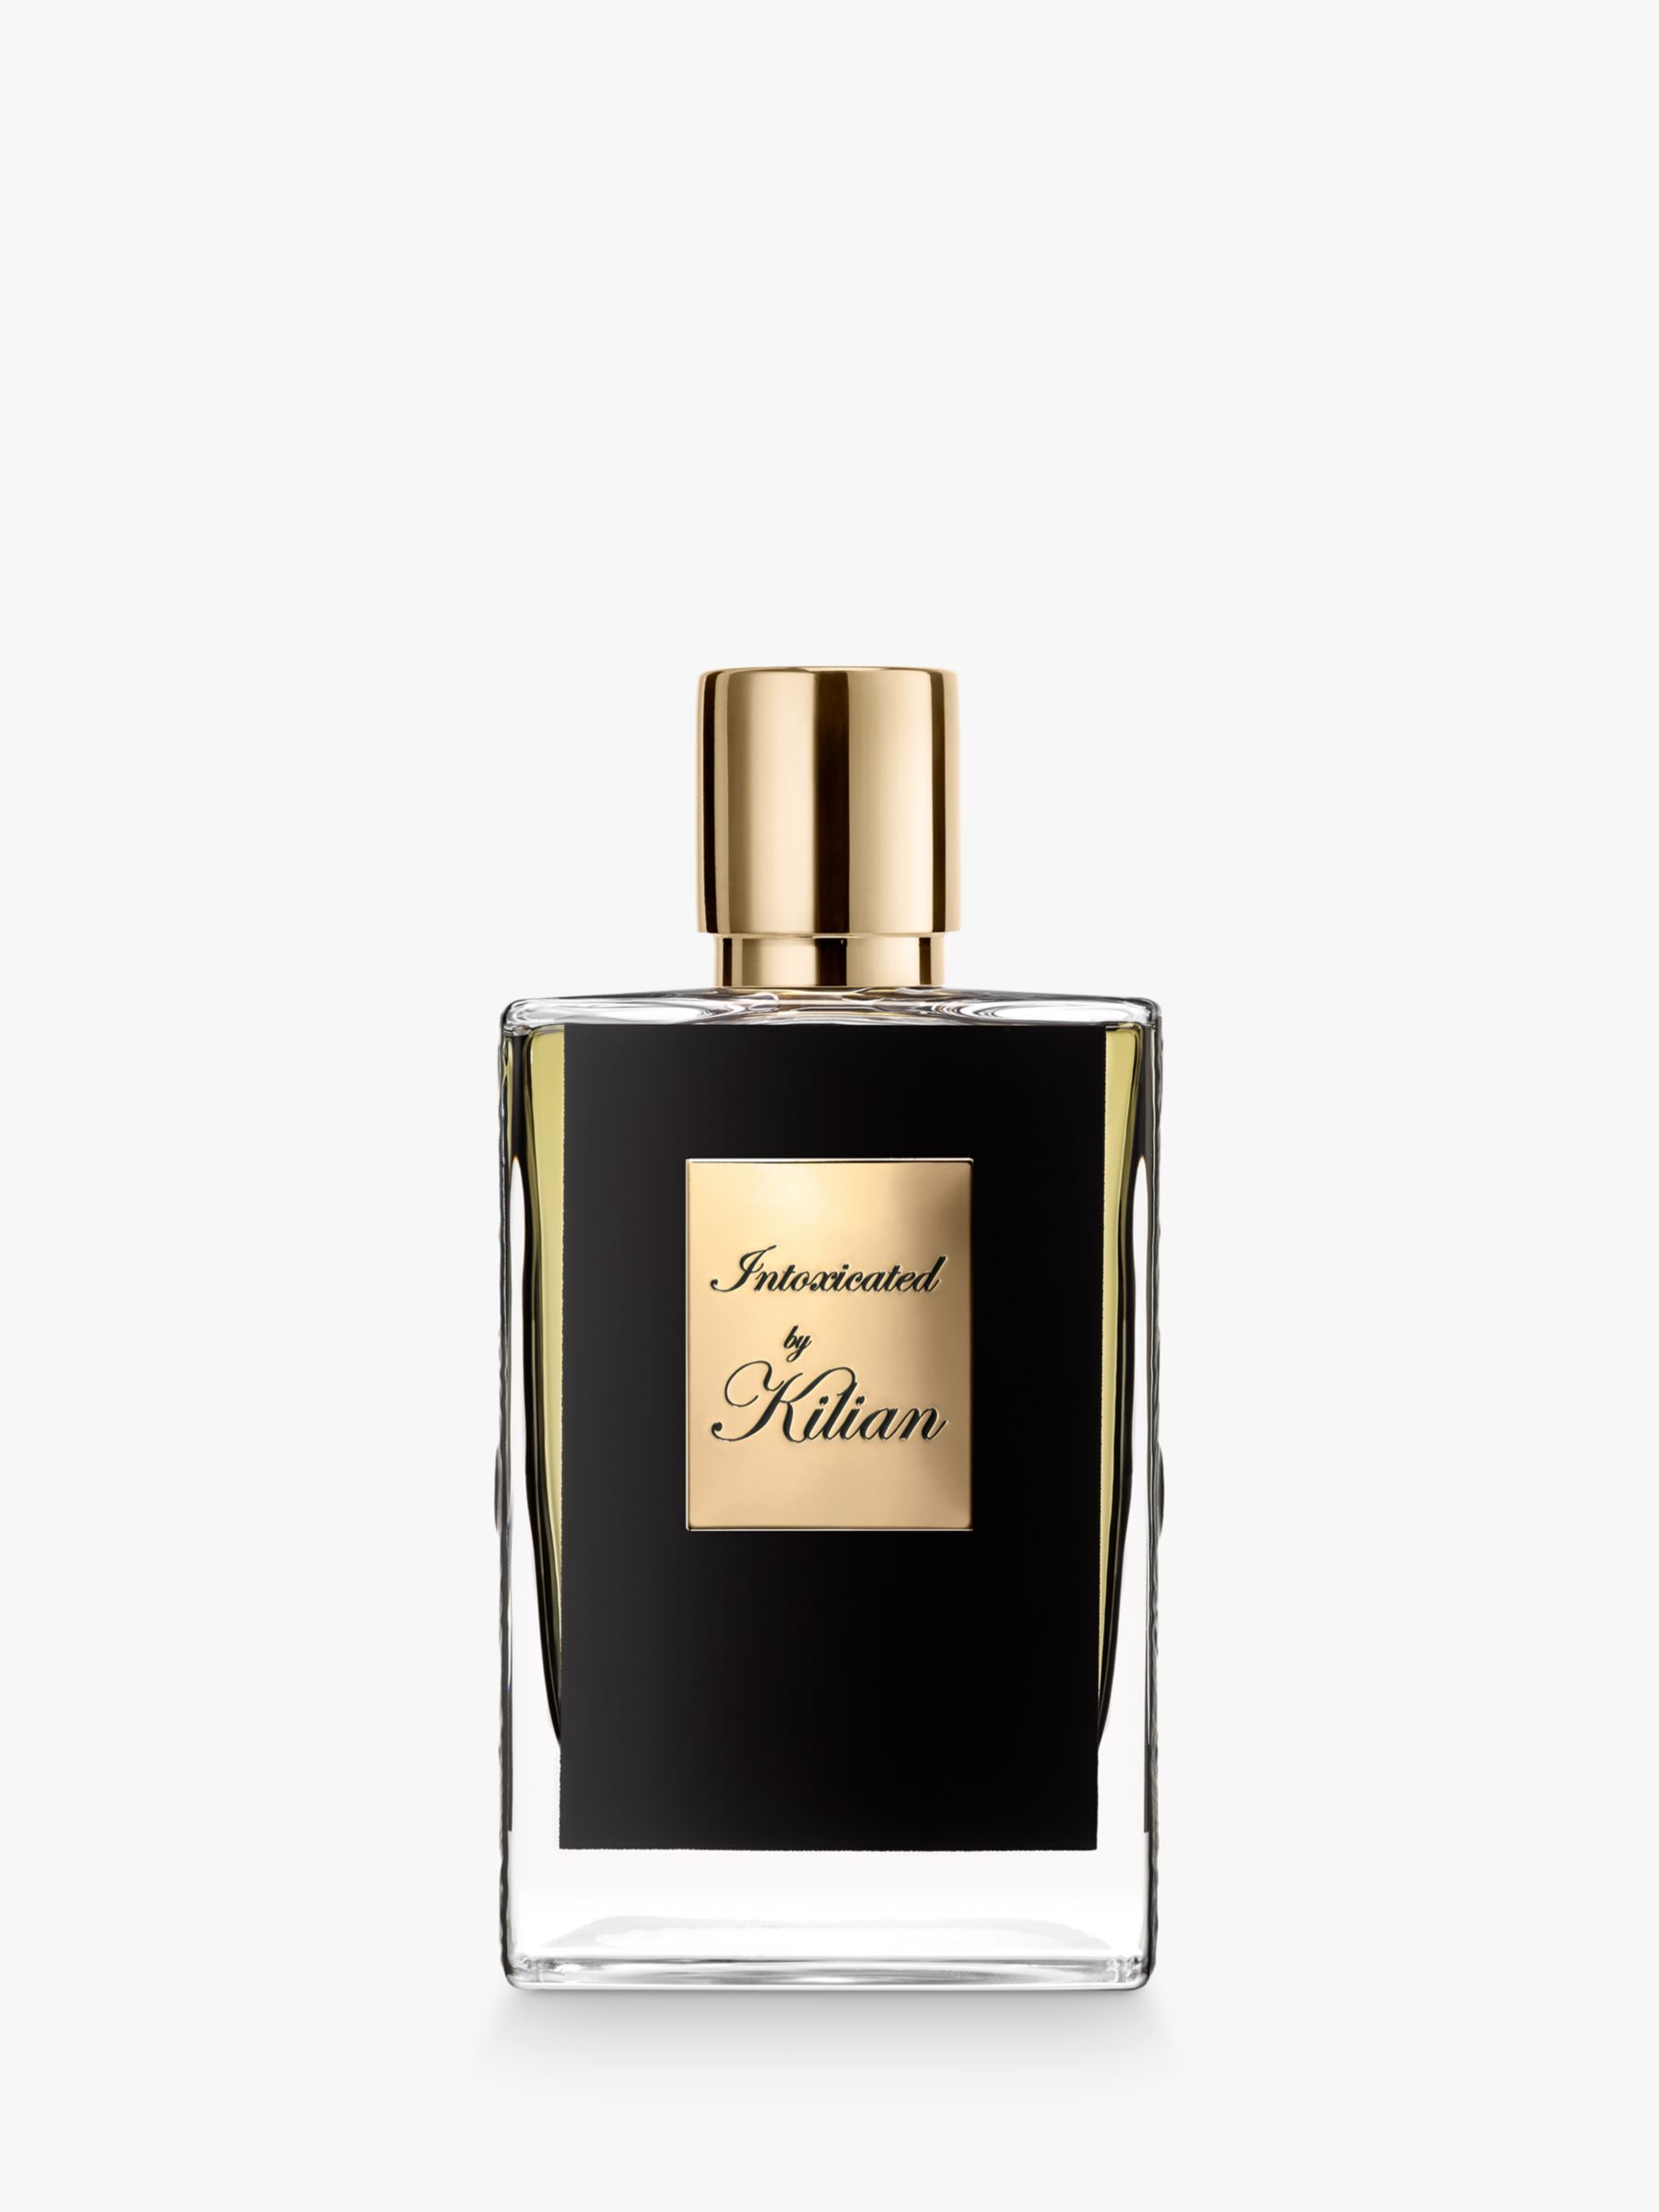 KILIAN PARIS Intoxicated Eau de Parfum, 50ml